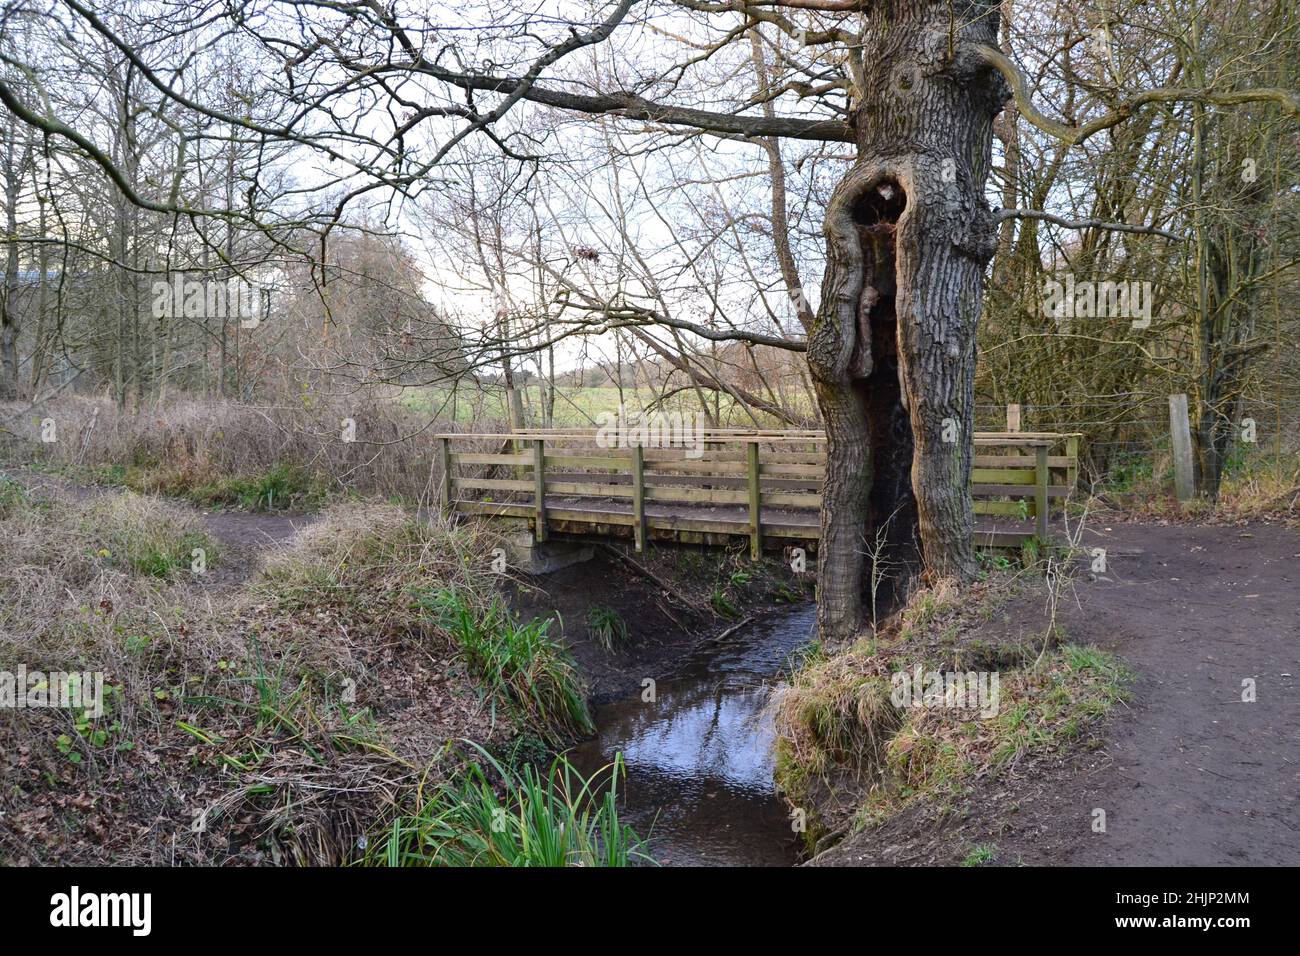 Le ruisseau Kyd en hiver.Petts Wood, Hawkwood Estate, Tong Farm.Ce ruisseau s'élève à Locksbottom et devient la rivière Quaggy, un affluent de la Tamise Banque D'Images